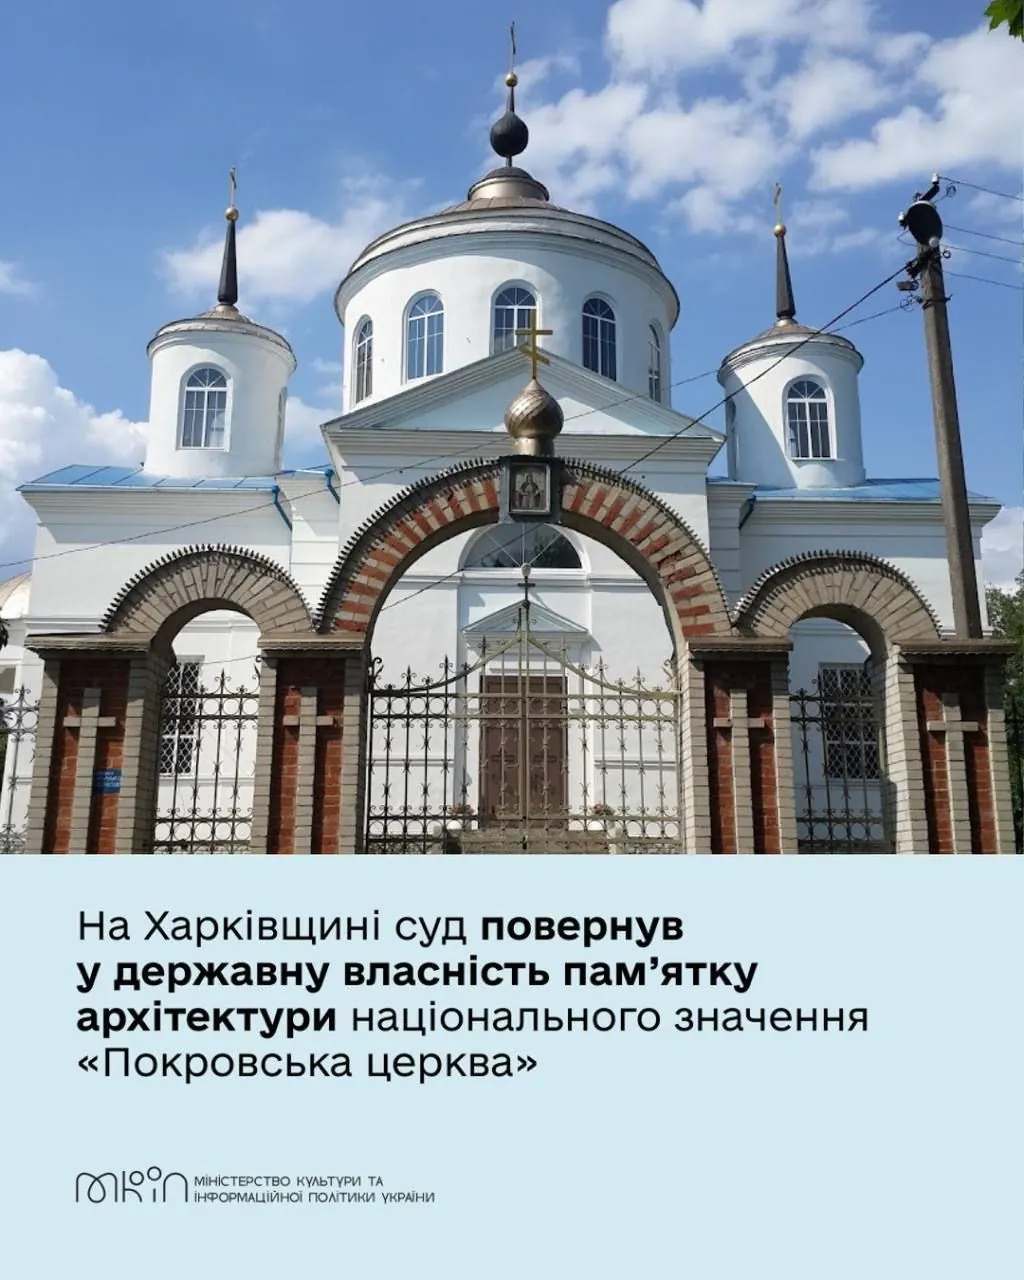 Суд повернув державі пам'ятку архітектури 'Покровська церква' на Харківщині